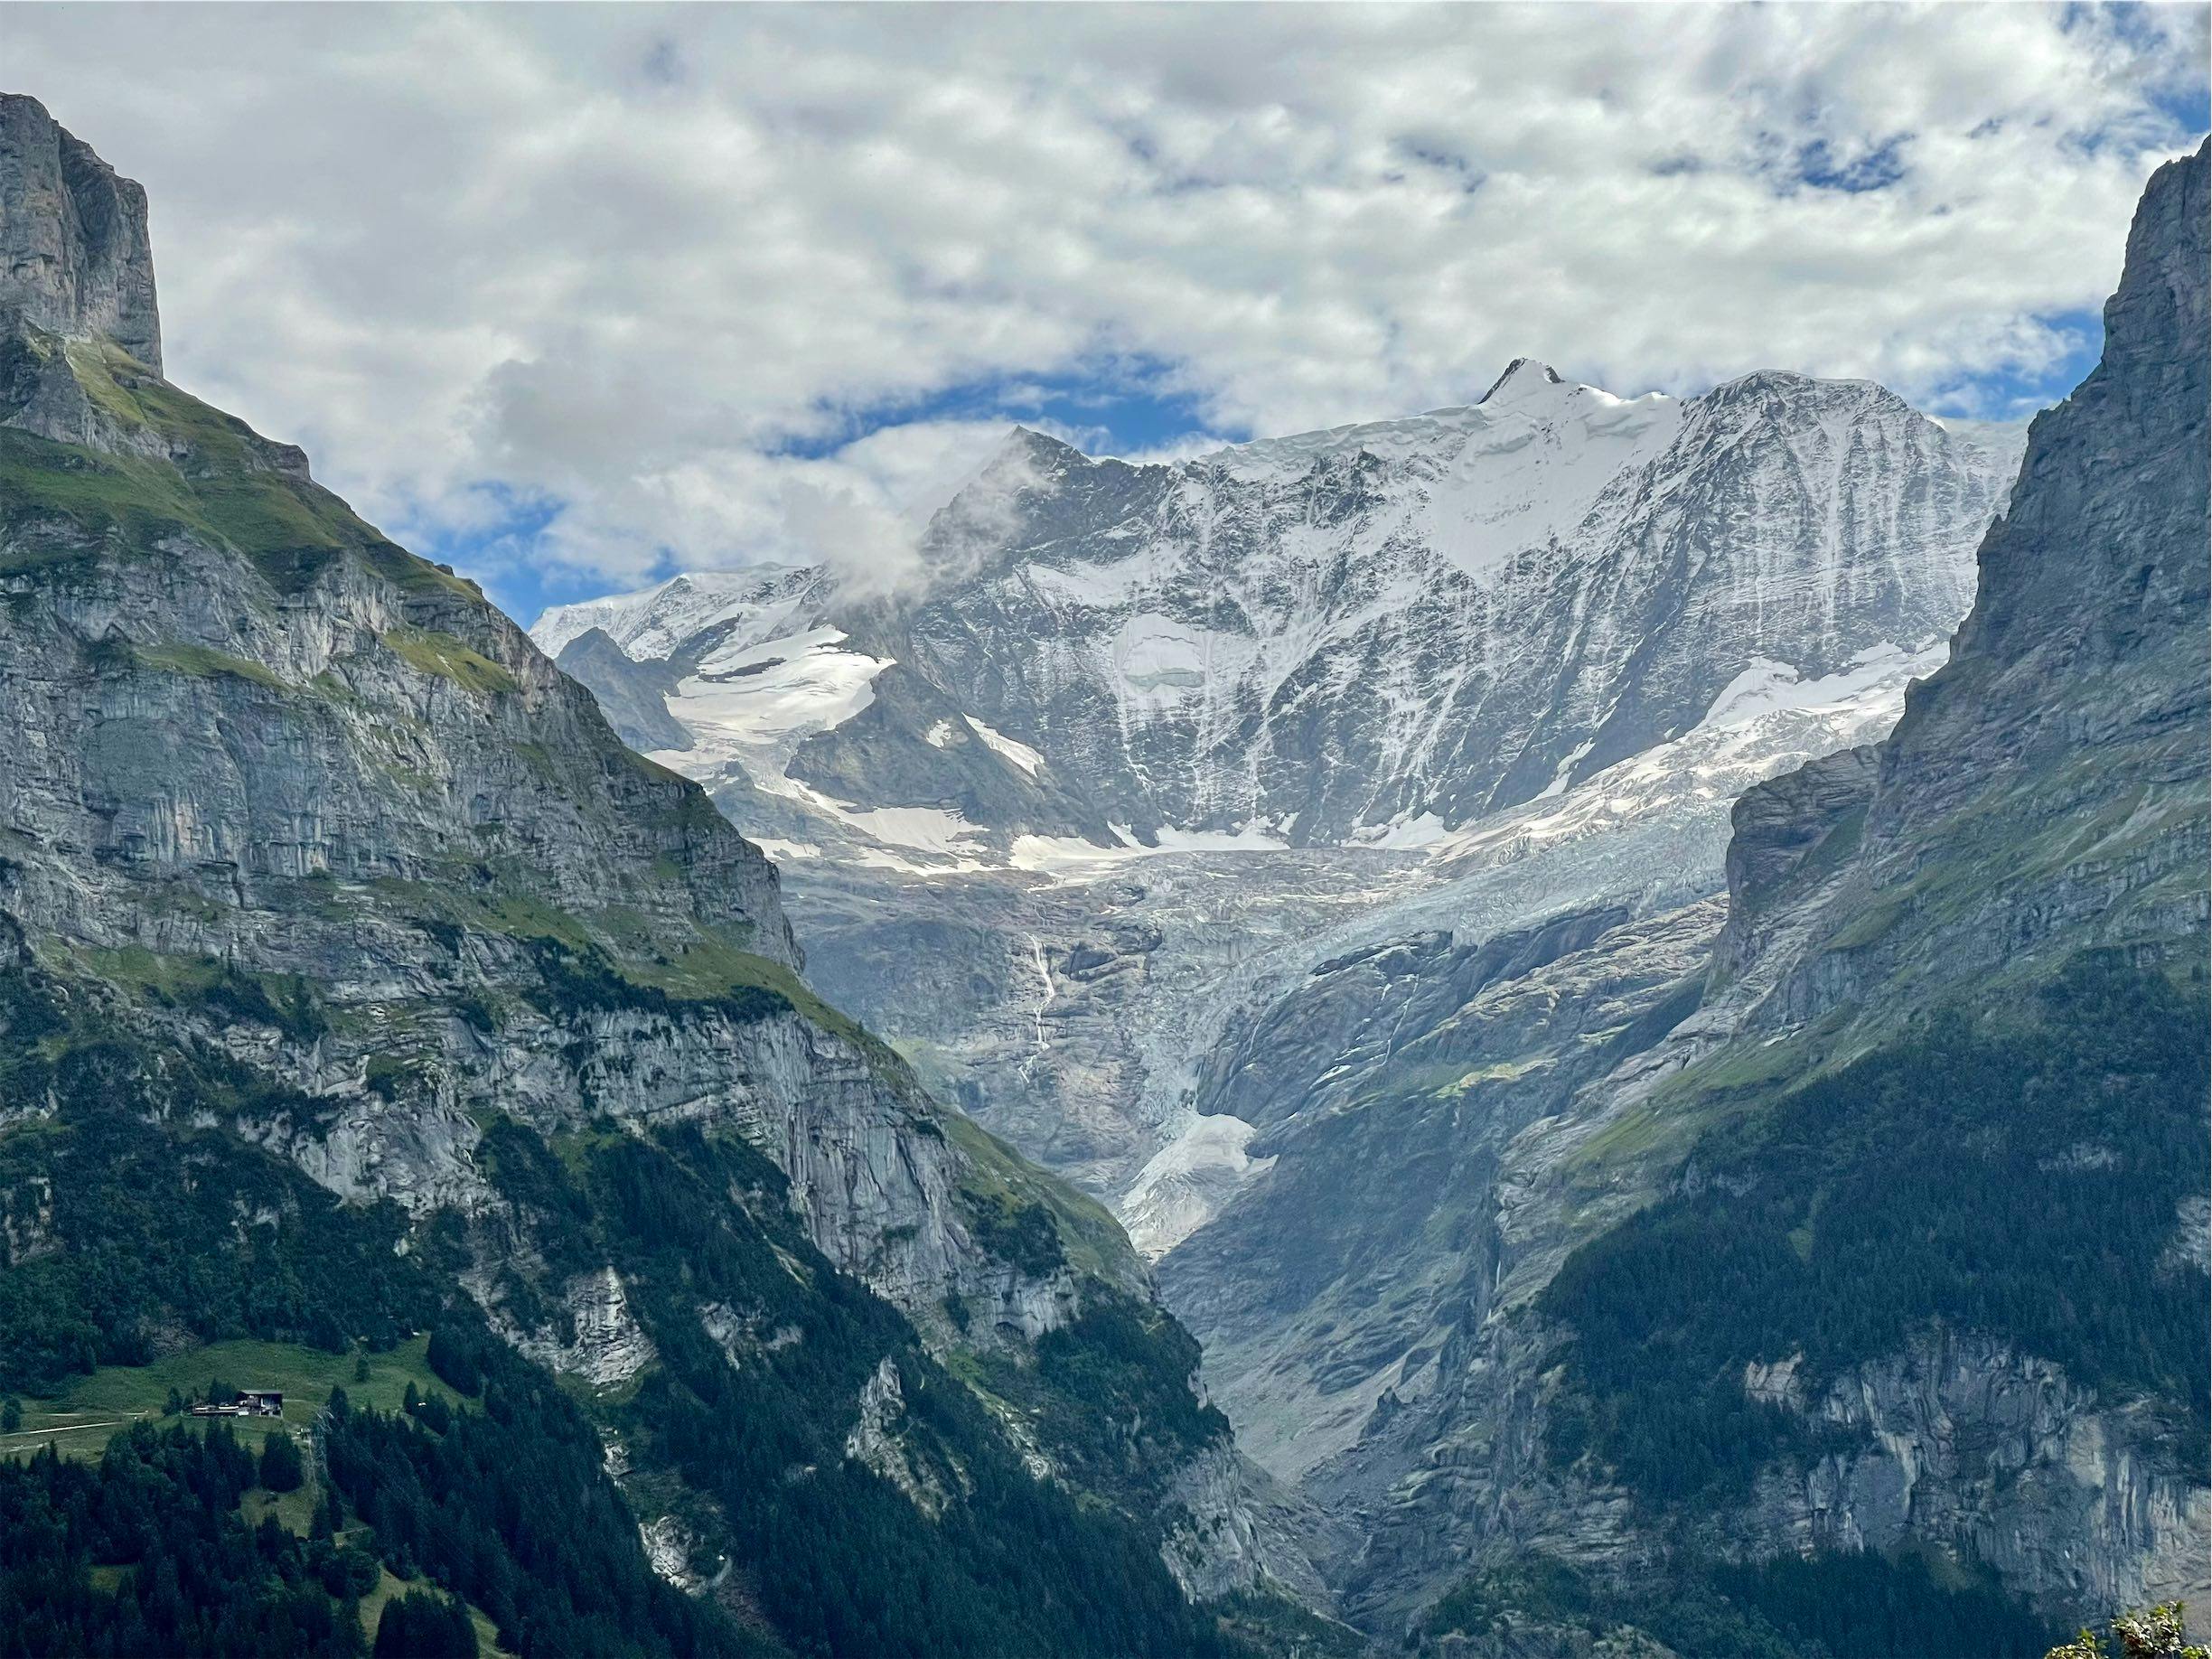 Picture taken in Grindelwald, Switzerland